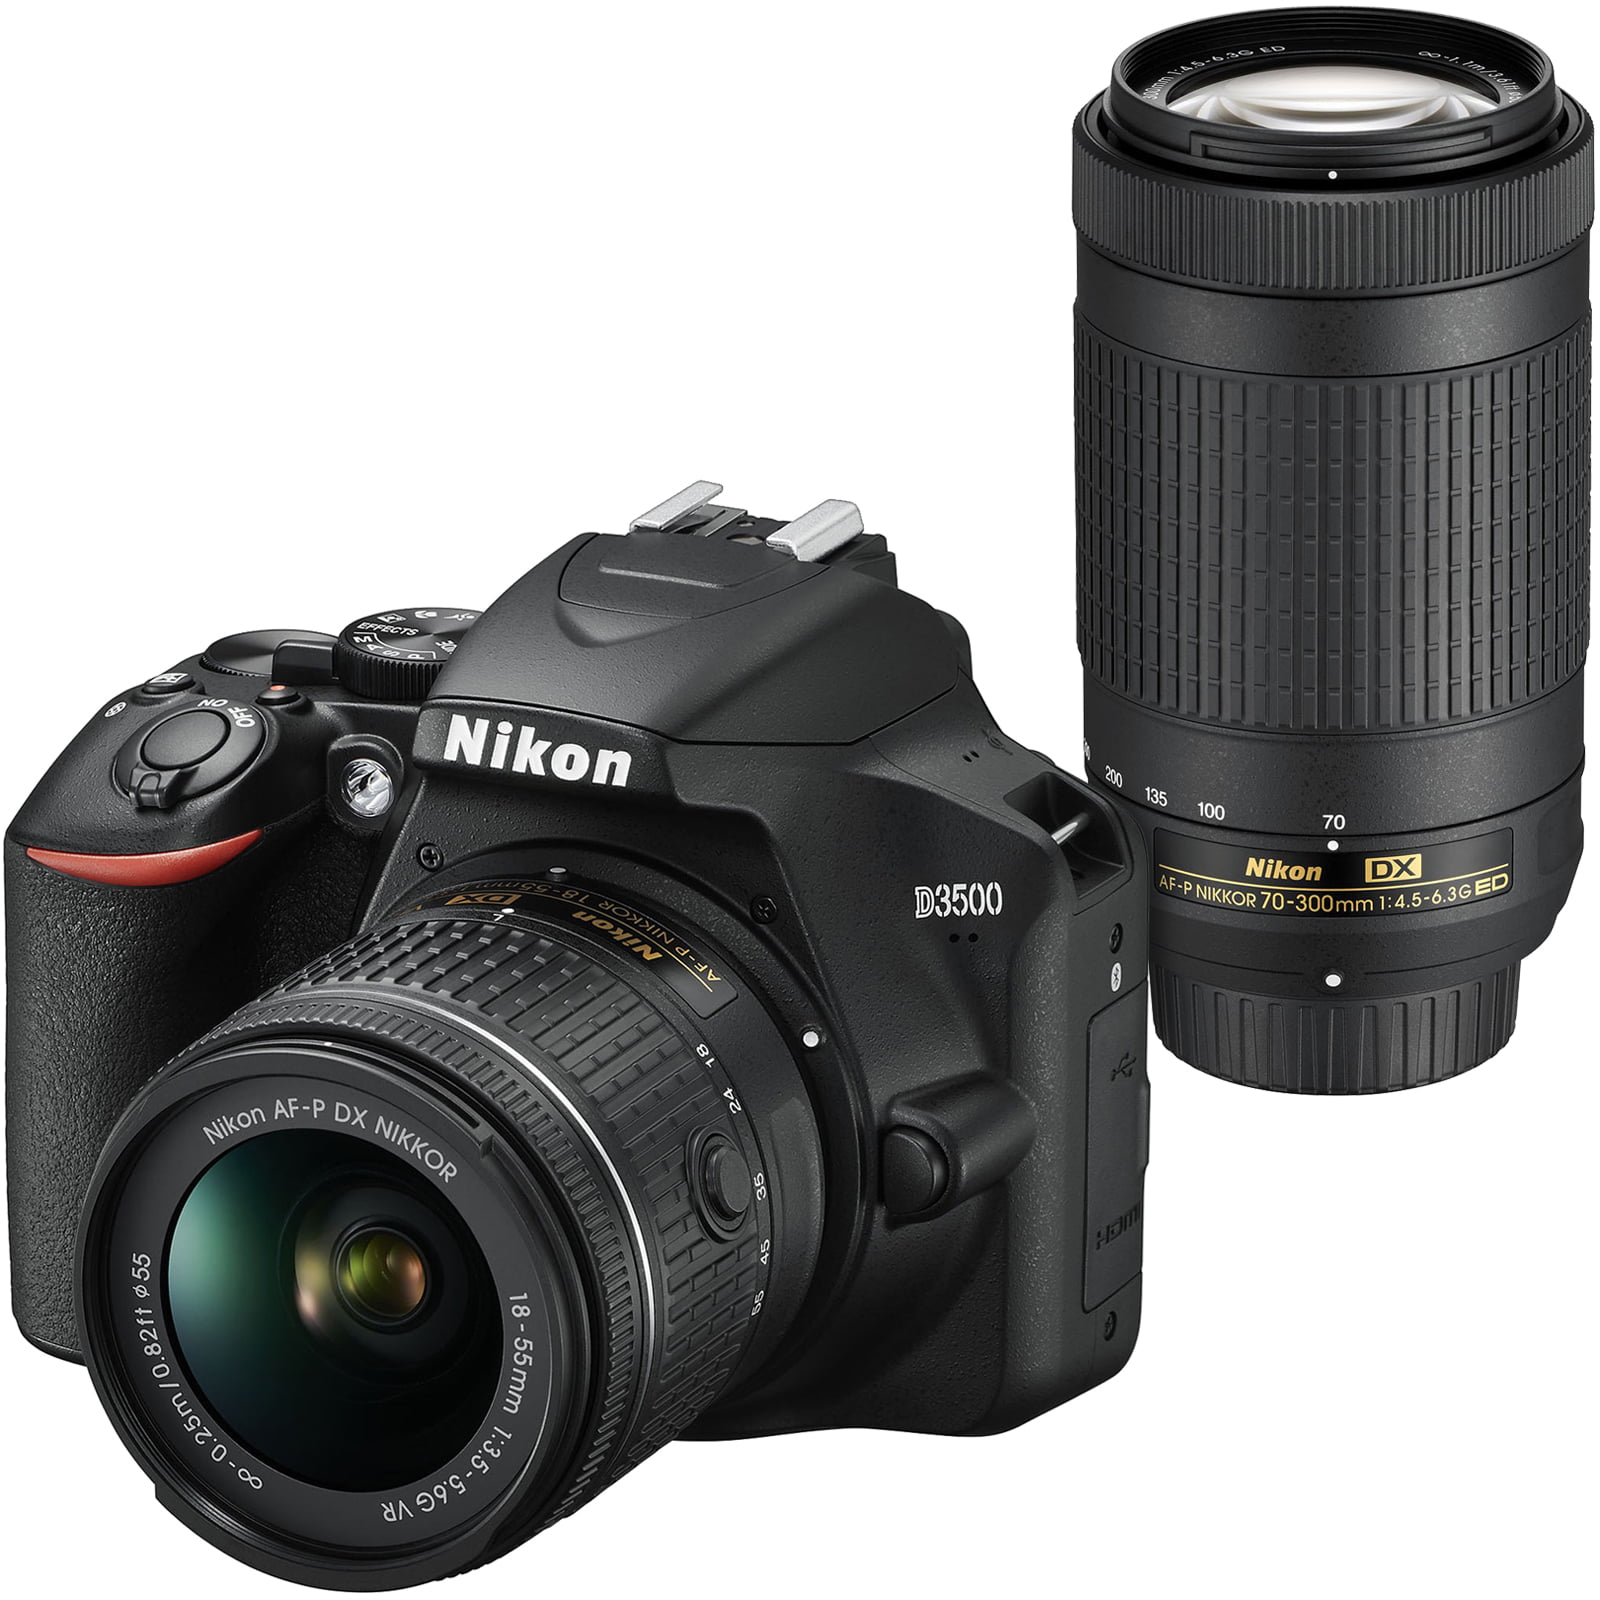 Certified Refurbished Nikon AF-P DX NIKKOR 70-300mm f/4.5-6.3G ED Lens for Nikon DSLR Cameras